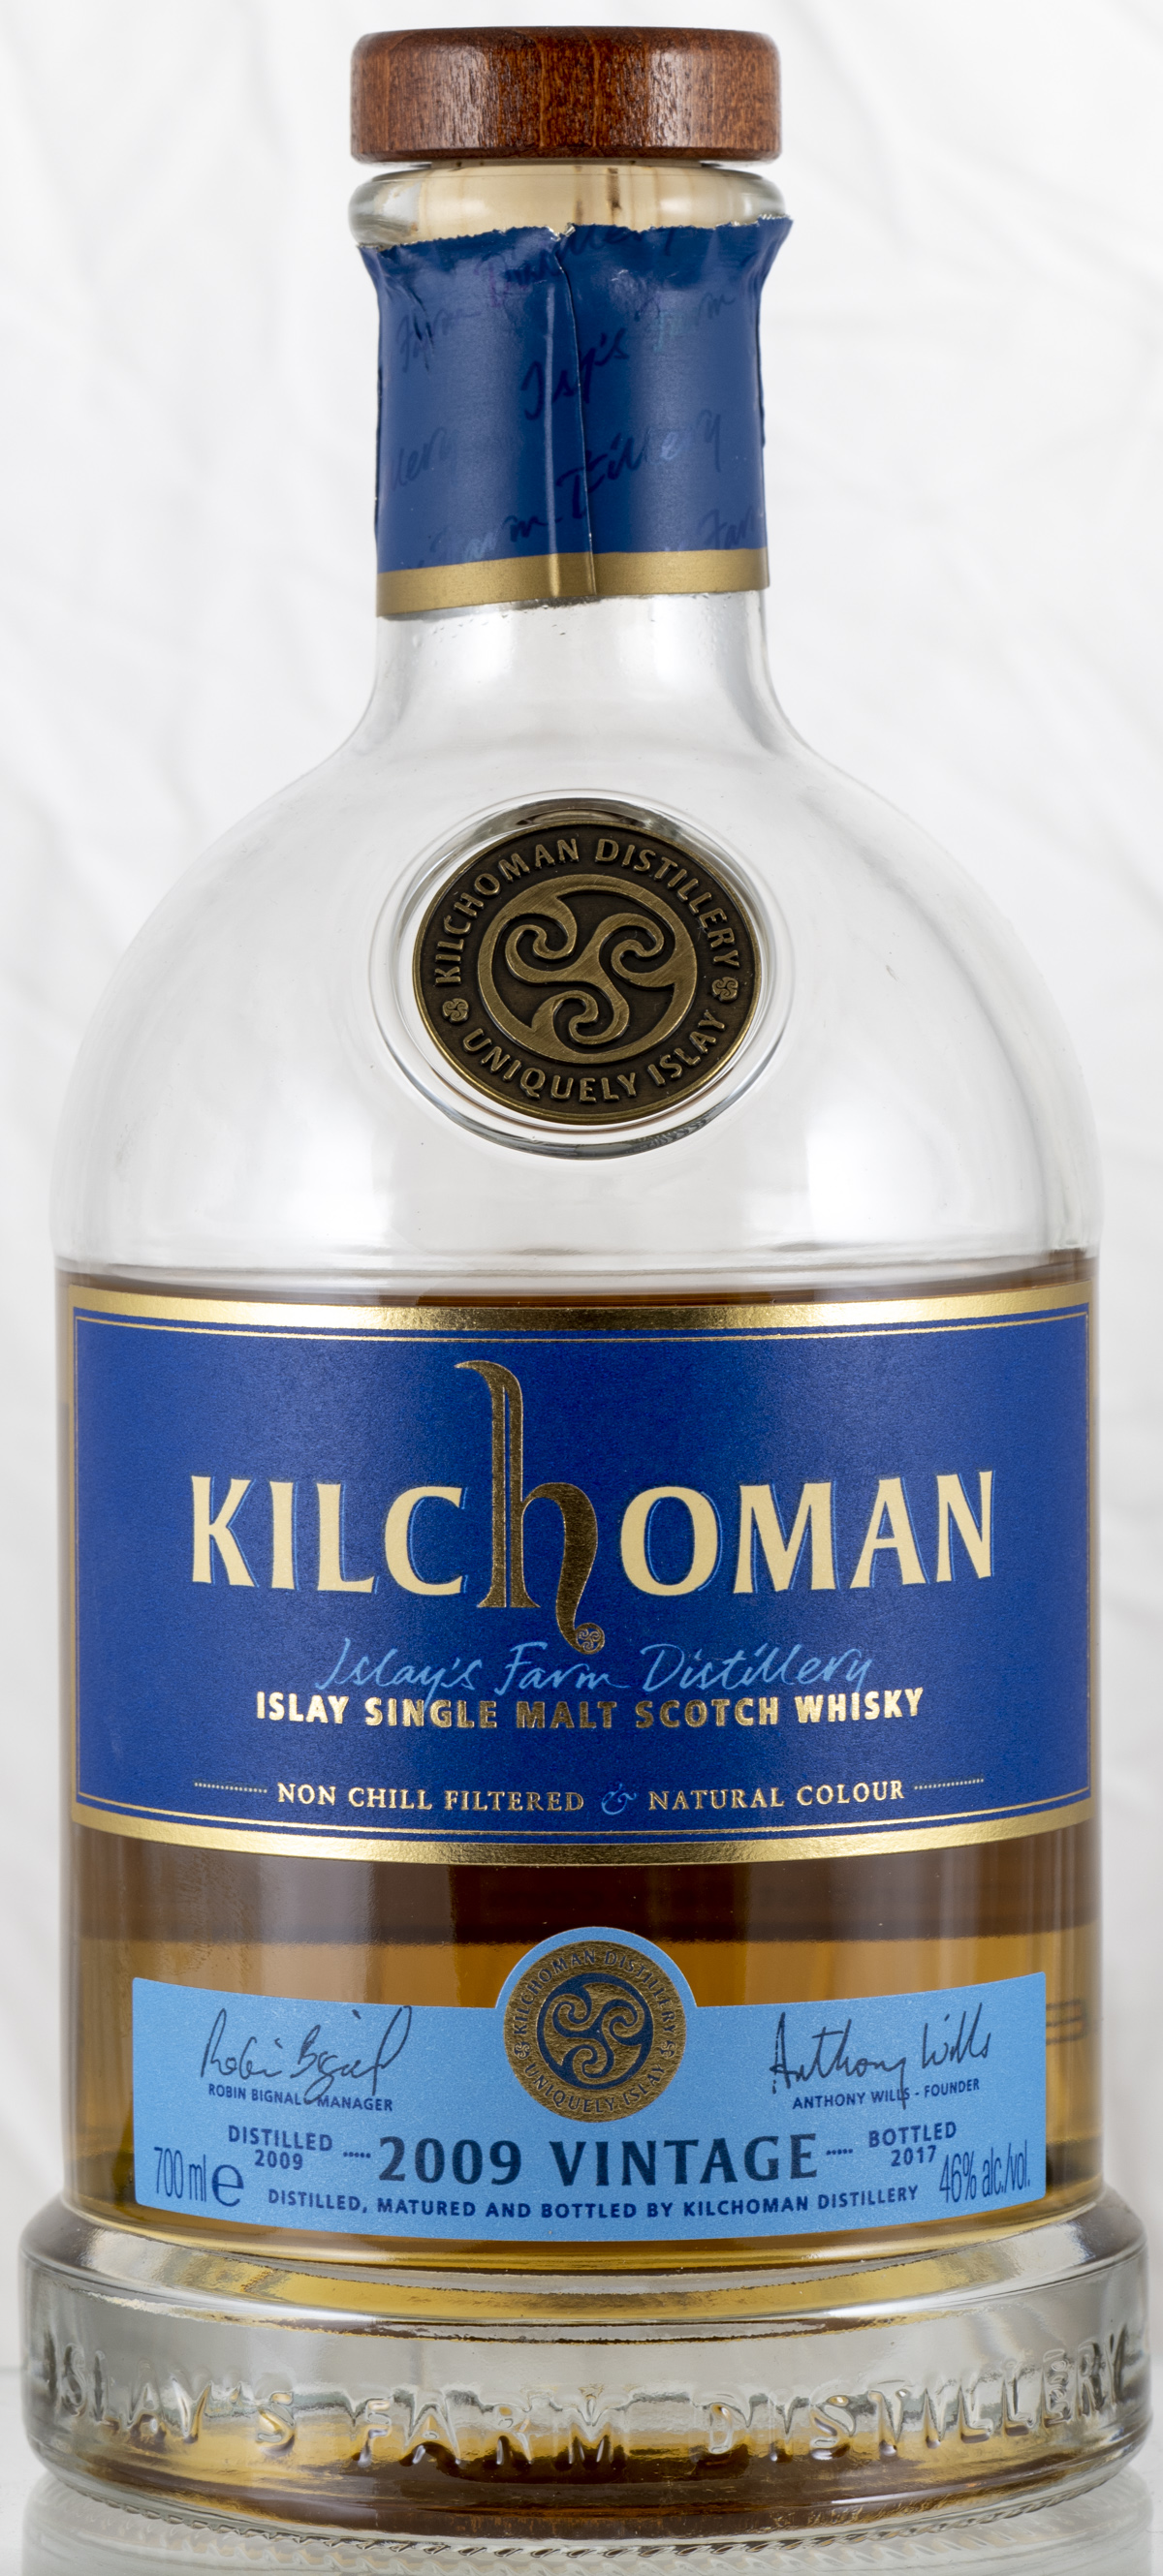 Billede: PHC_4059 - Kilchoma Vintage 2009 8 yers - bottle front.jpg